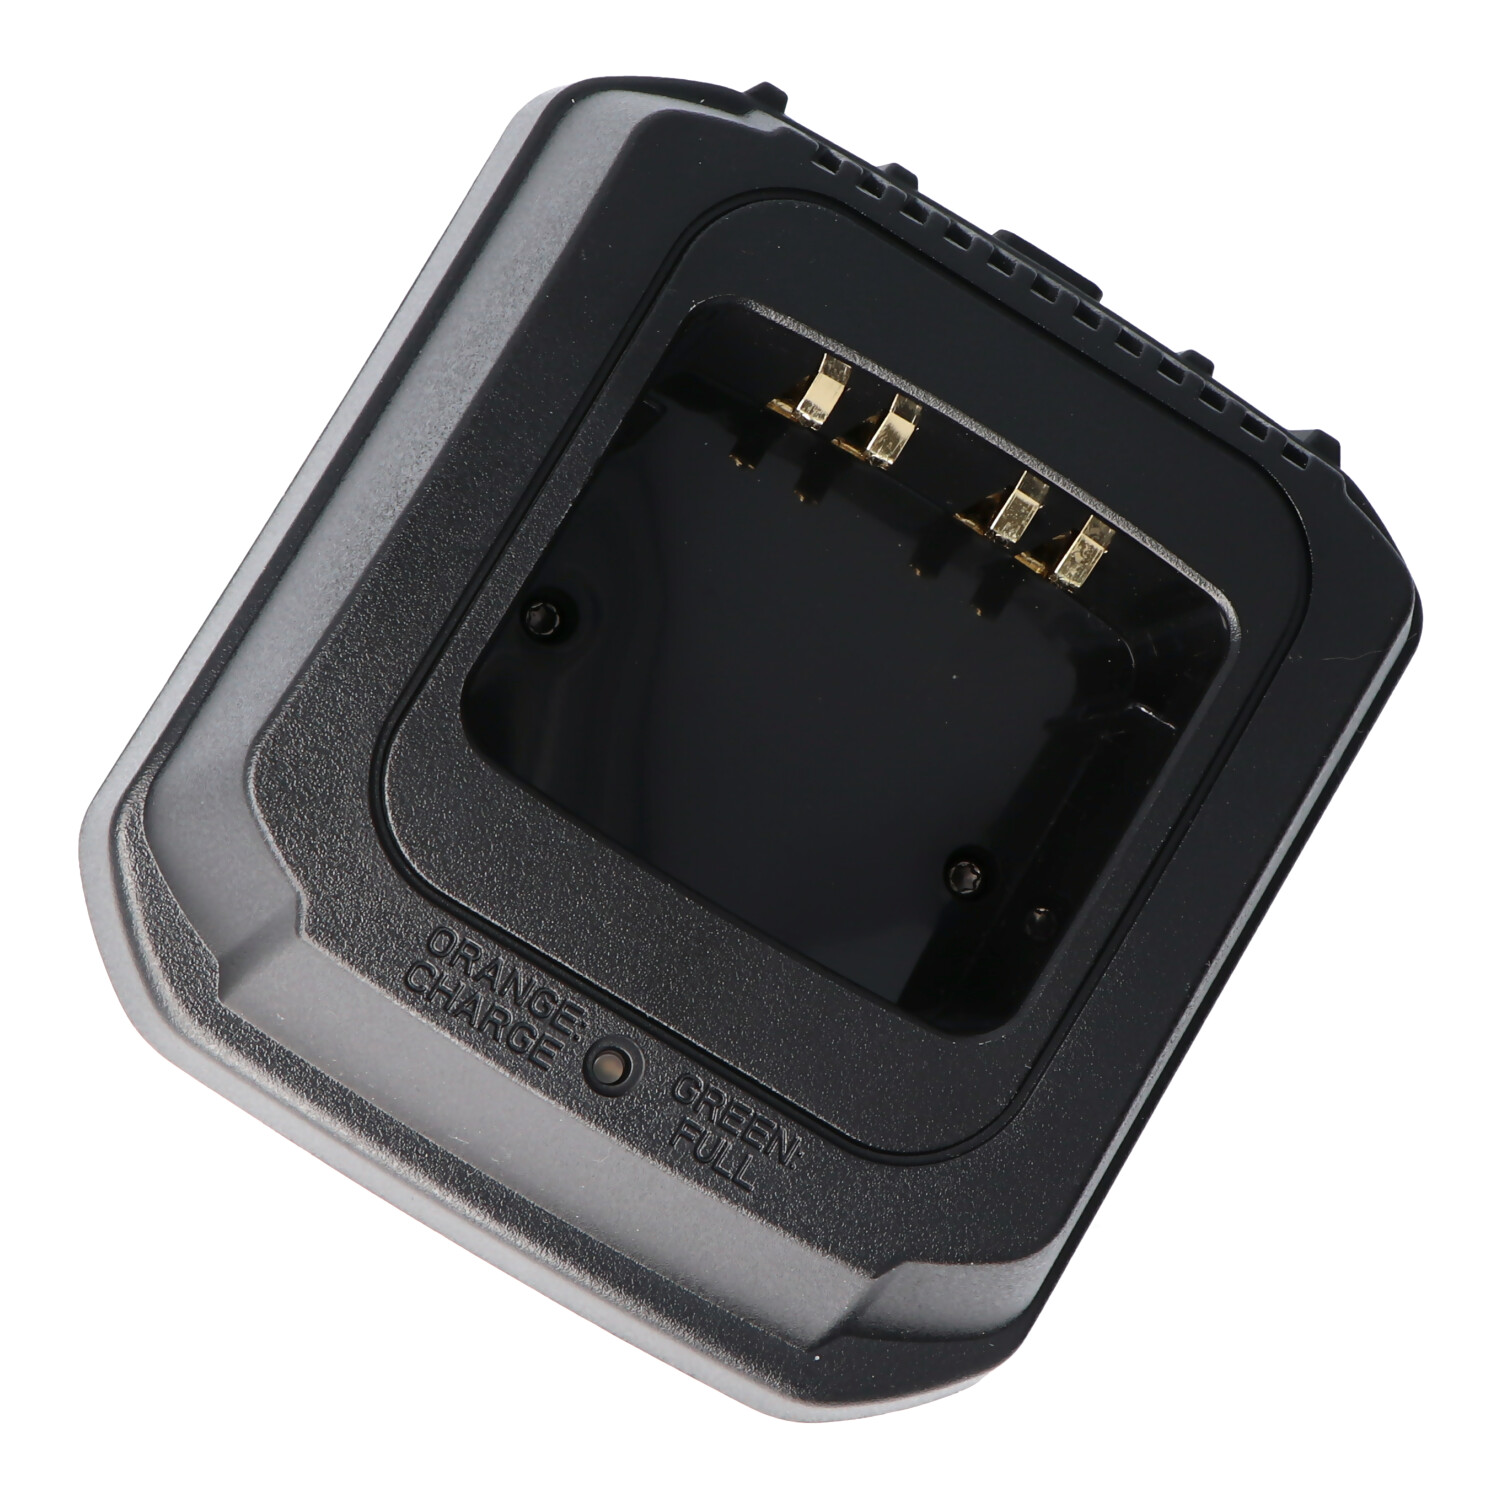 Schnell-Ladegerät passend für den Motorola Akku GP900, GP1200, NTN-7144, NTN7144, NTN-7143, NTN7143, MTS2013